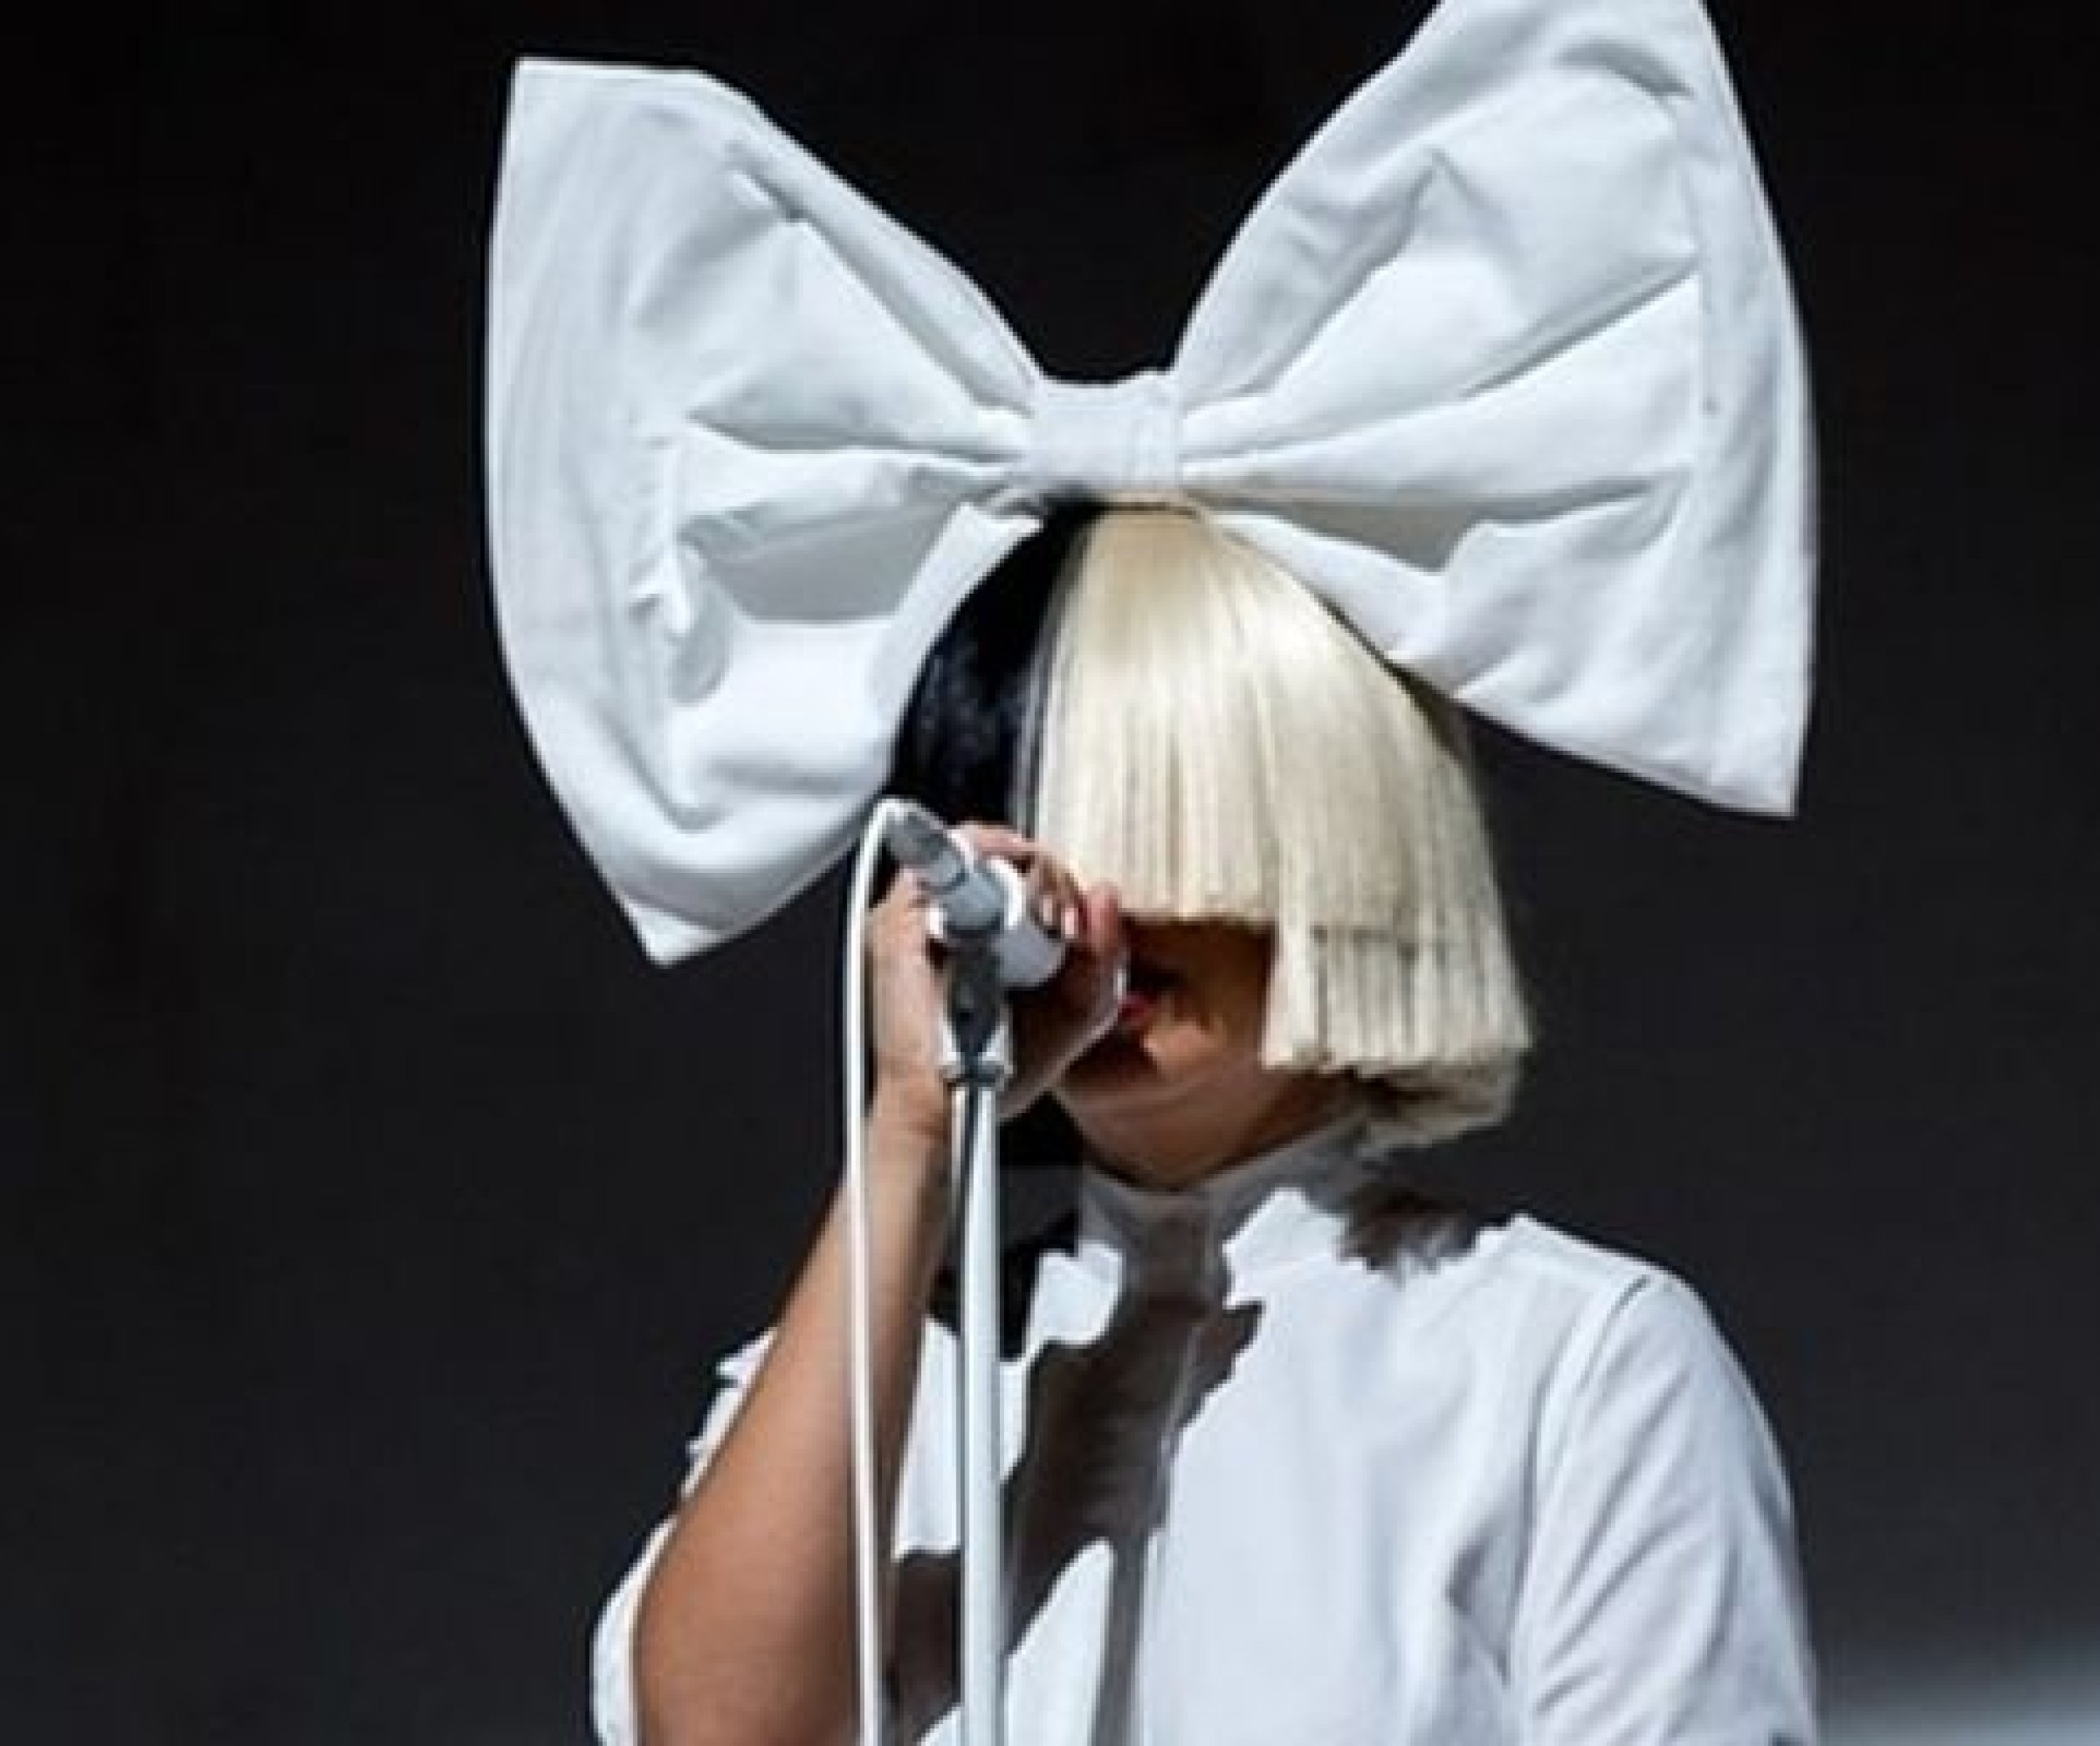 ВИДЕО: Певица Sia рассказала, почему скрывает лицо